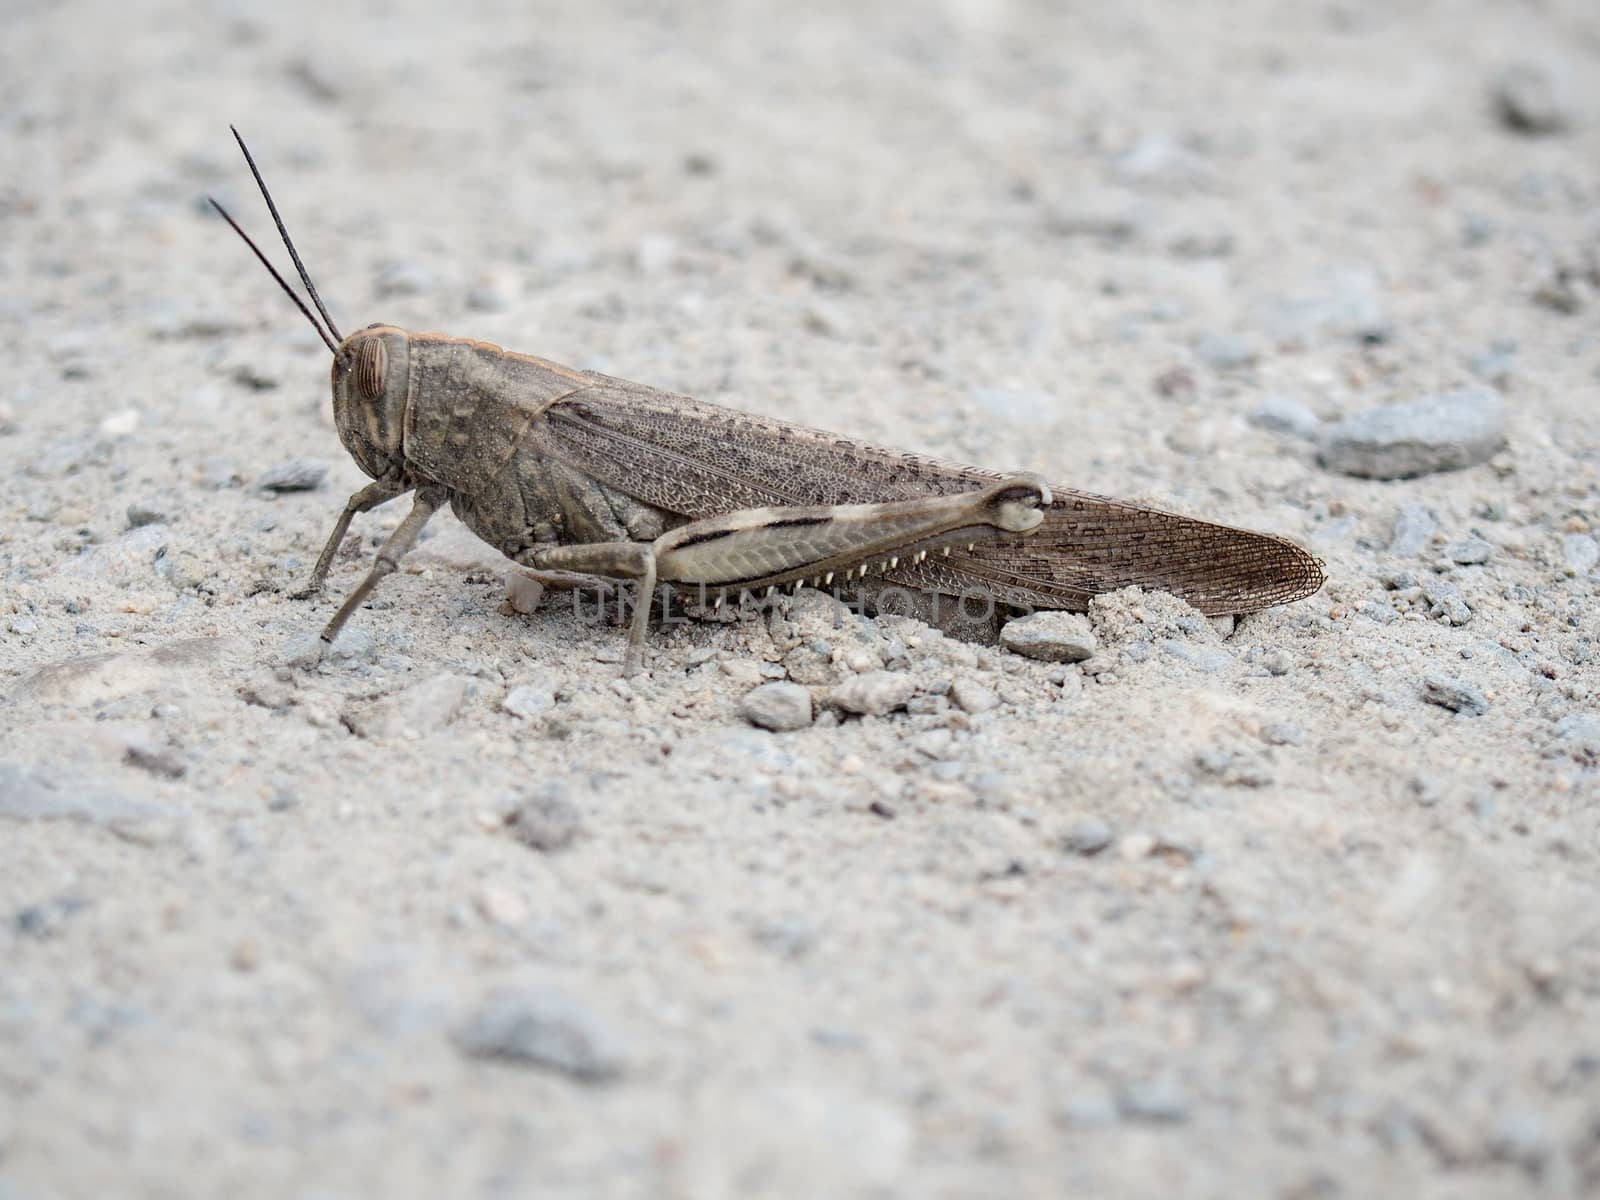 Common Brown Field Grasshopper by NikkiGensert